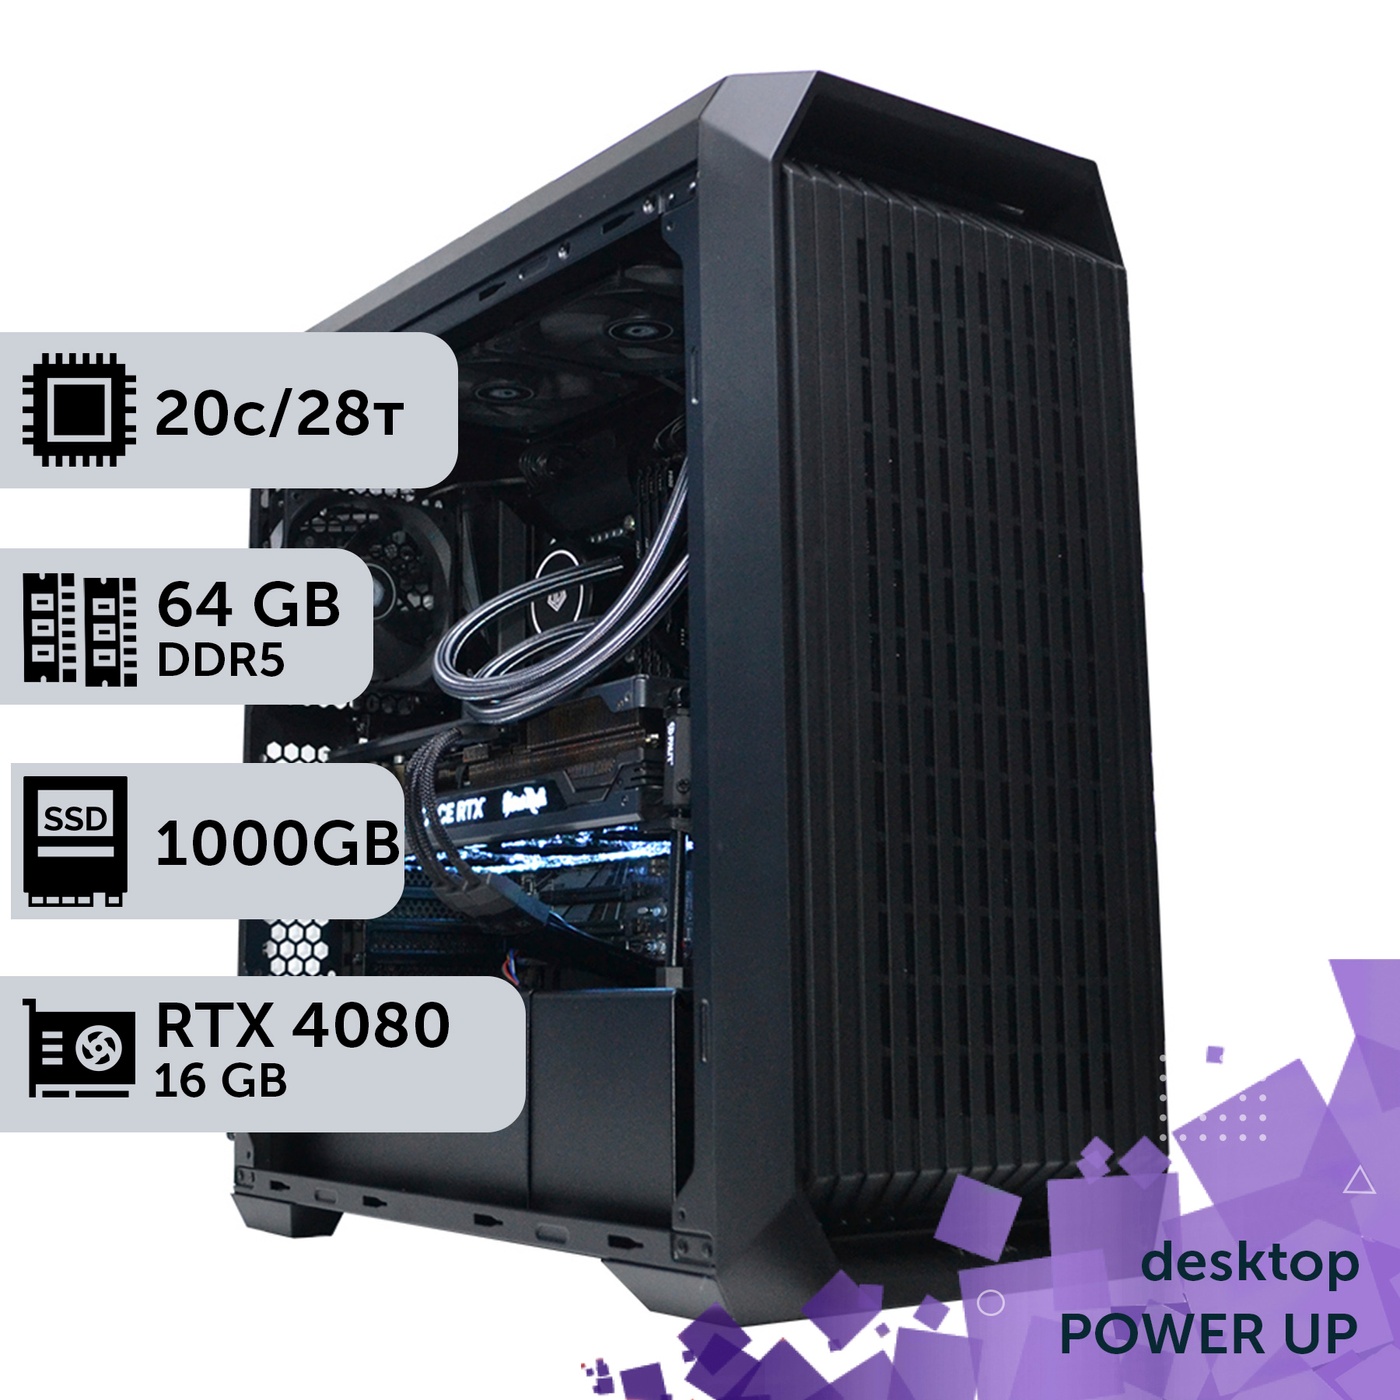 Робоча станція PowerUp Desktop #356 Core i7 14700K/64 GB/SSD 1TB/GeForce RTX 4080 16GB